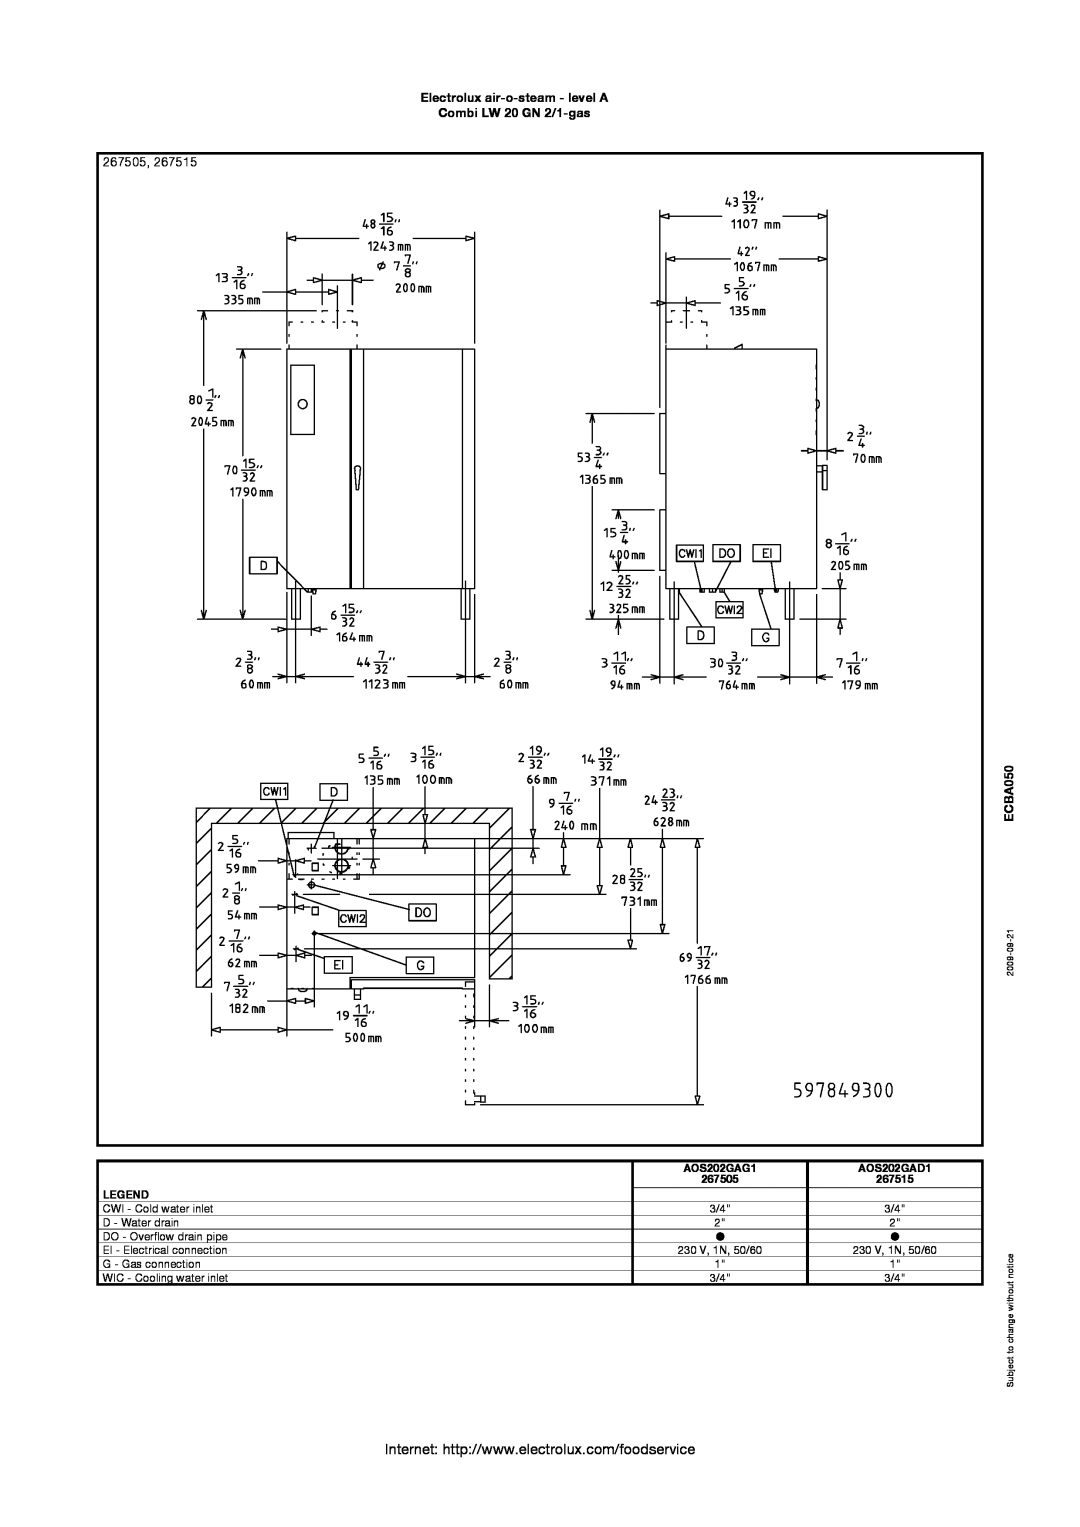 Electrolux AOS202GAG1 manual 267505, Electrolux air-o-steam - level A Combi LW 20 GN 2/1-gas, ECBA050, AOS202GAD1, 267515 